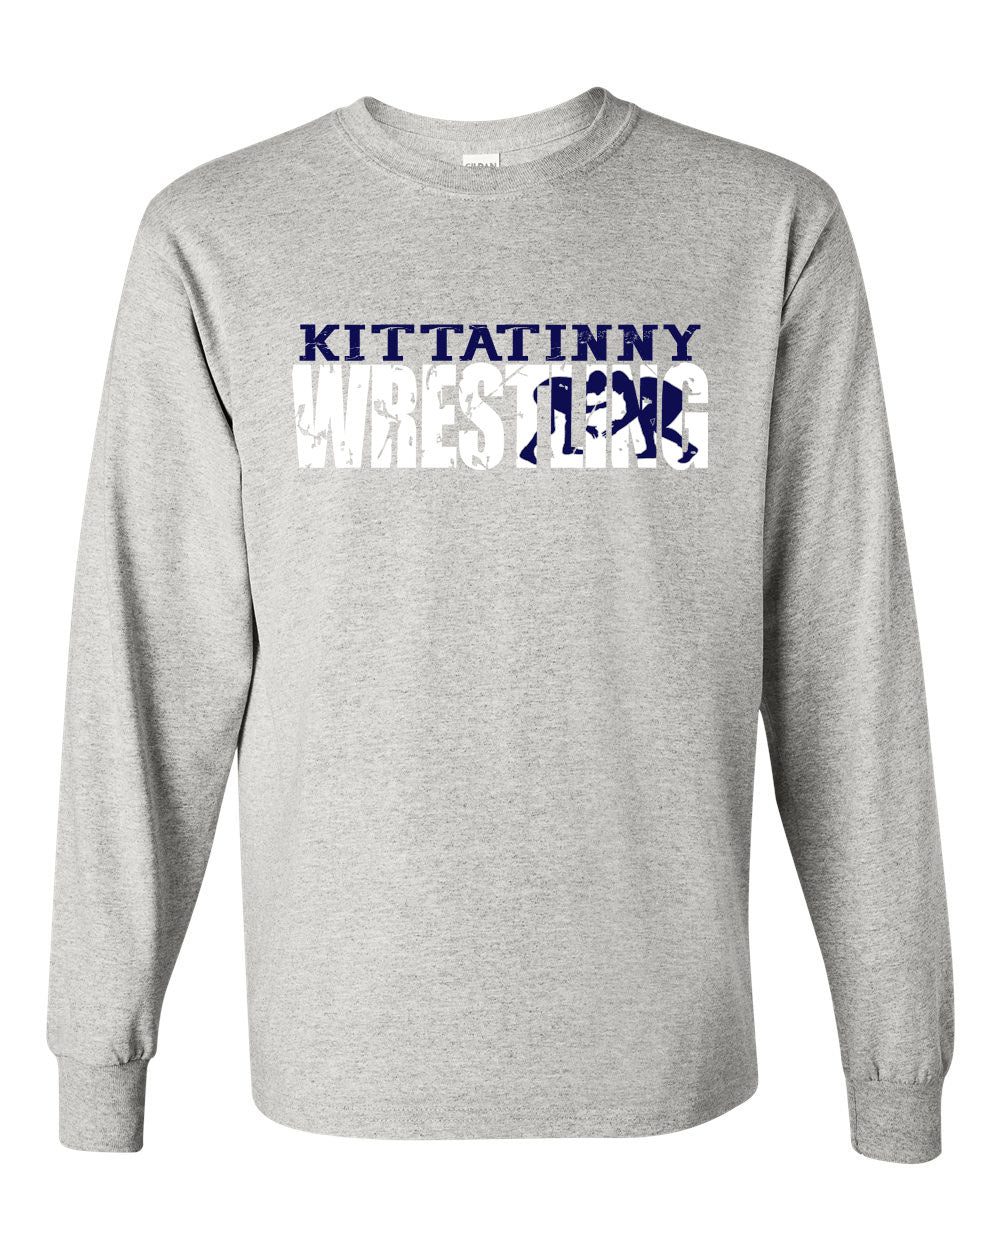 Kittatinny youth wrestling Design 2 Long Sleeve Shirt